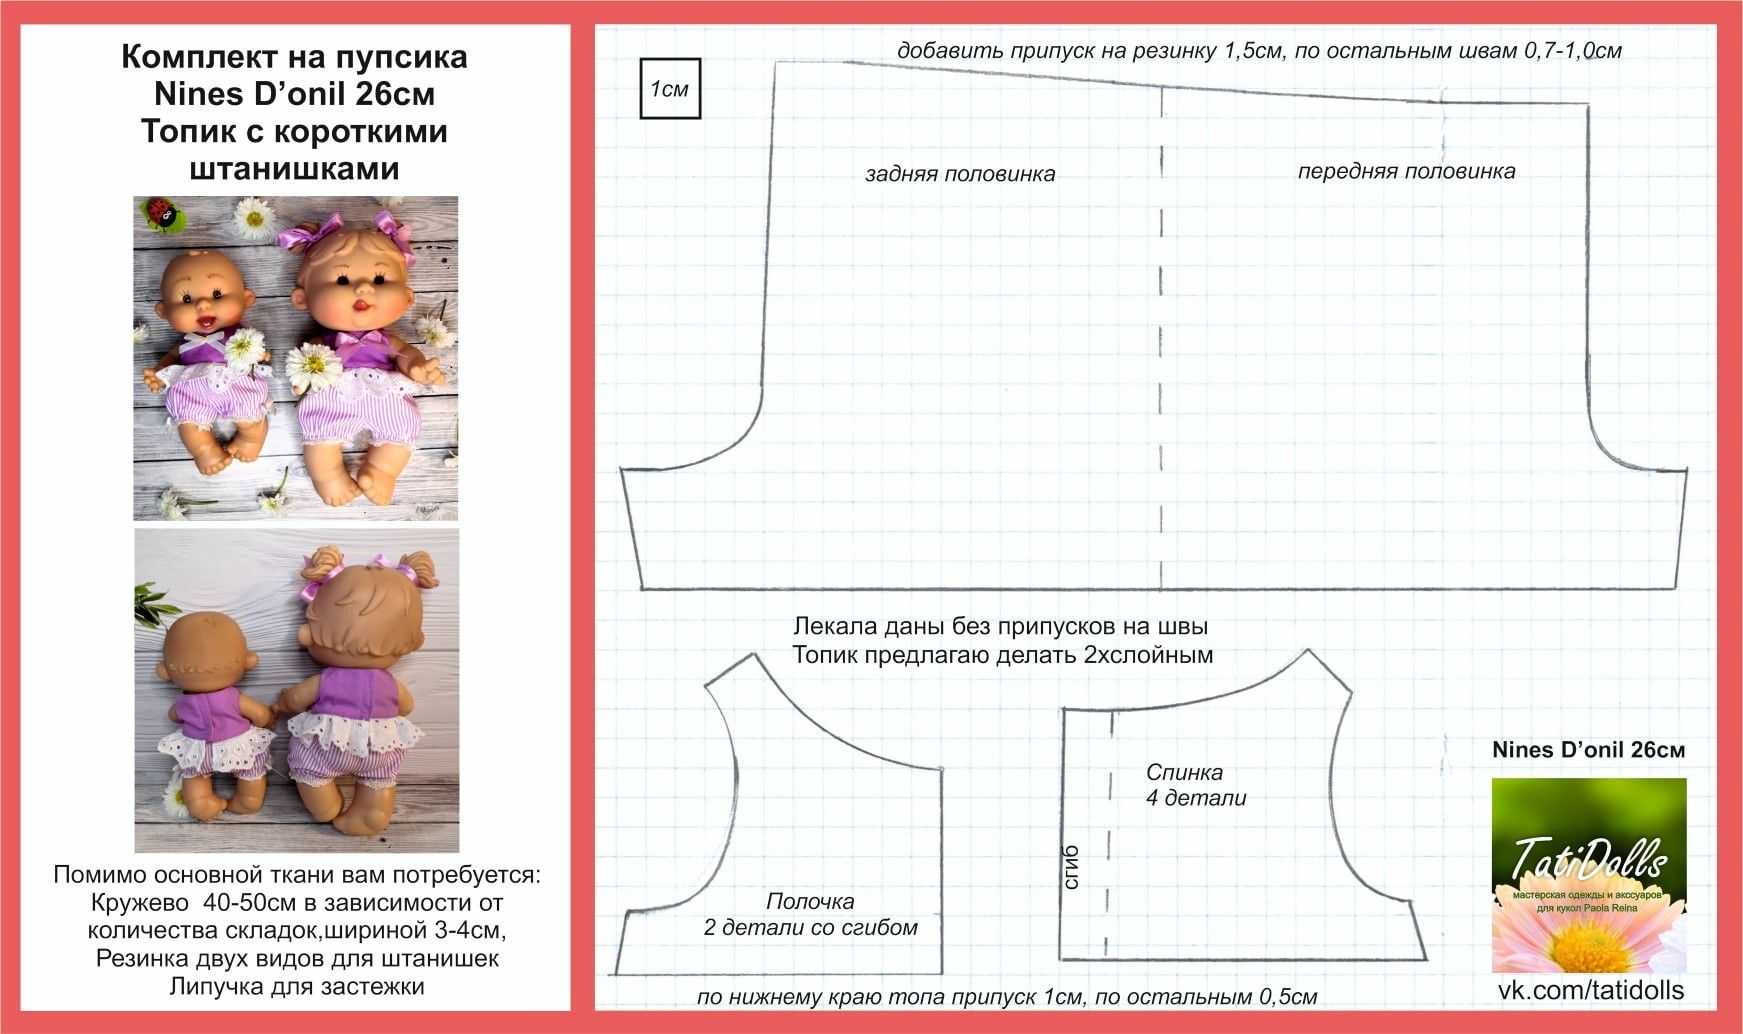 Вязание крючком для кукол беби бон: описание вязальных схем кукольной одежды